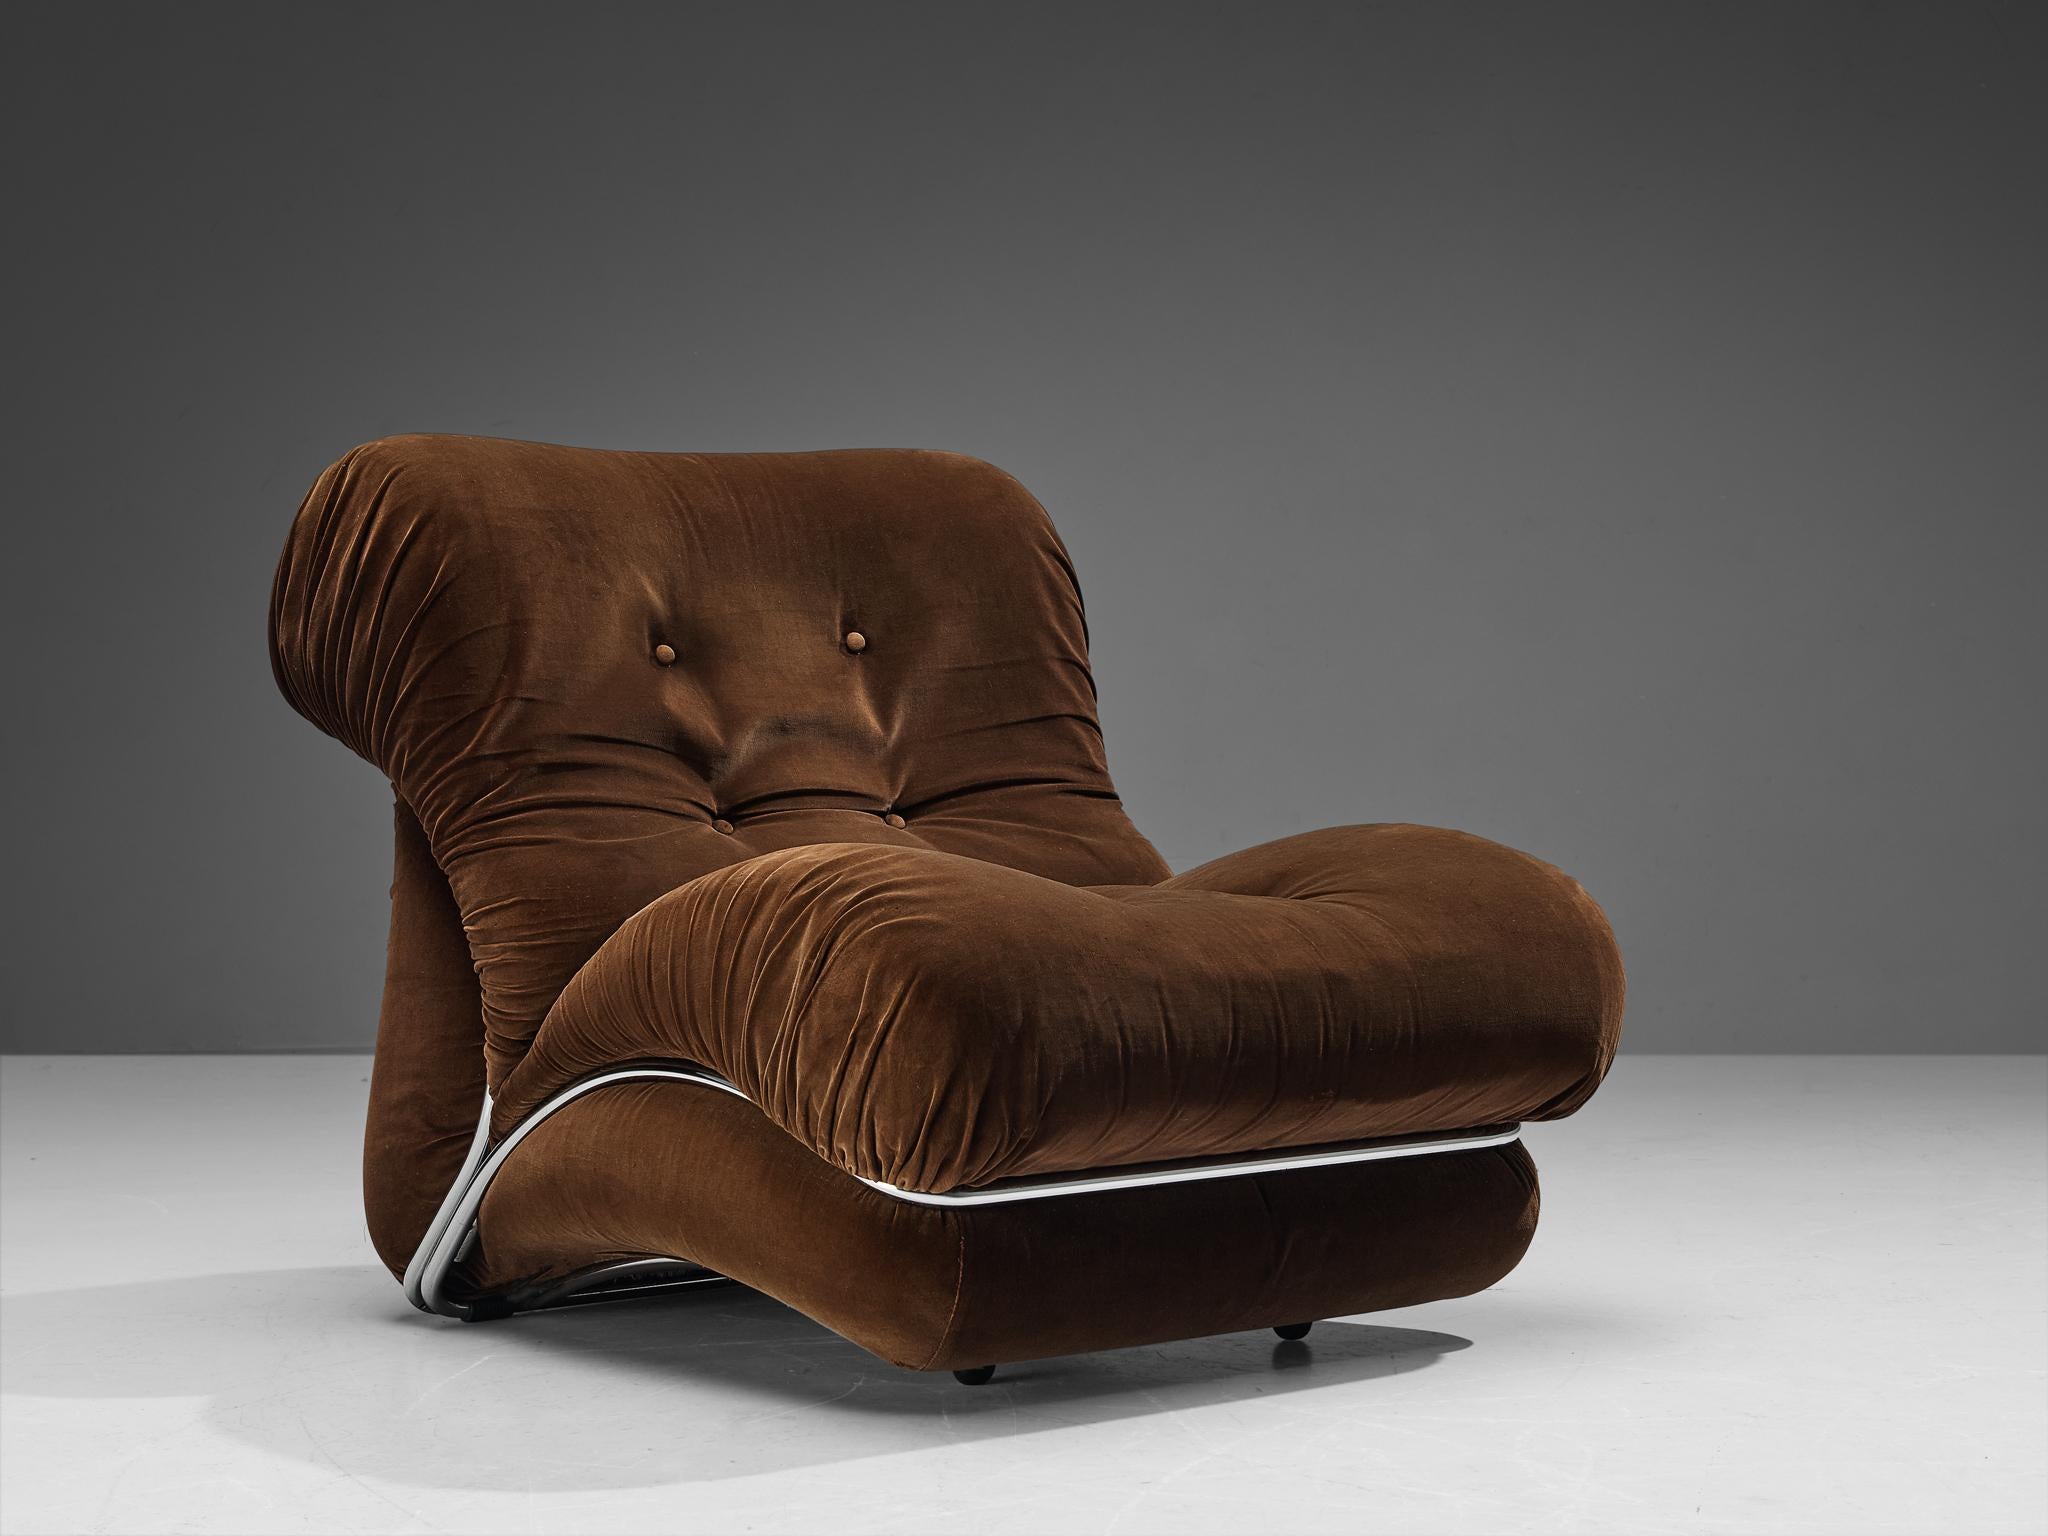 I.P.E., Loungesessel Modell 'Corolla', Samt, verchromtes Metall, Italien, 1970er Jahre

Ein auffälliges Design, das Ihrem Raum eine lebendige Ausstrahlung verleiht und das Entspannungserlebnis selbst intensiviert. Für die Konstruktion des Sitzes